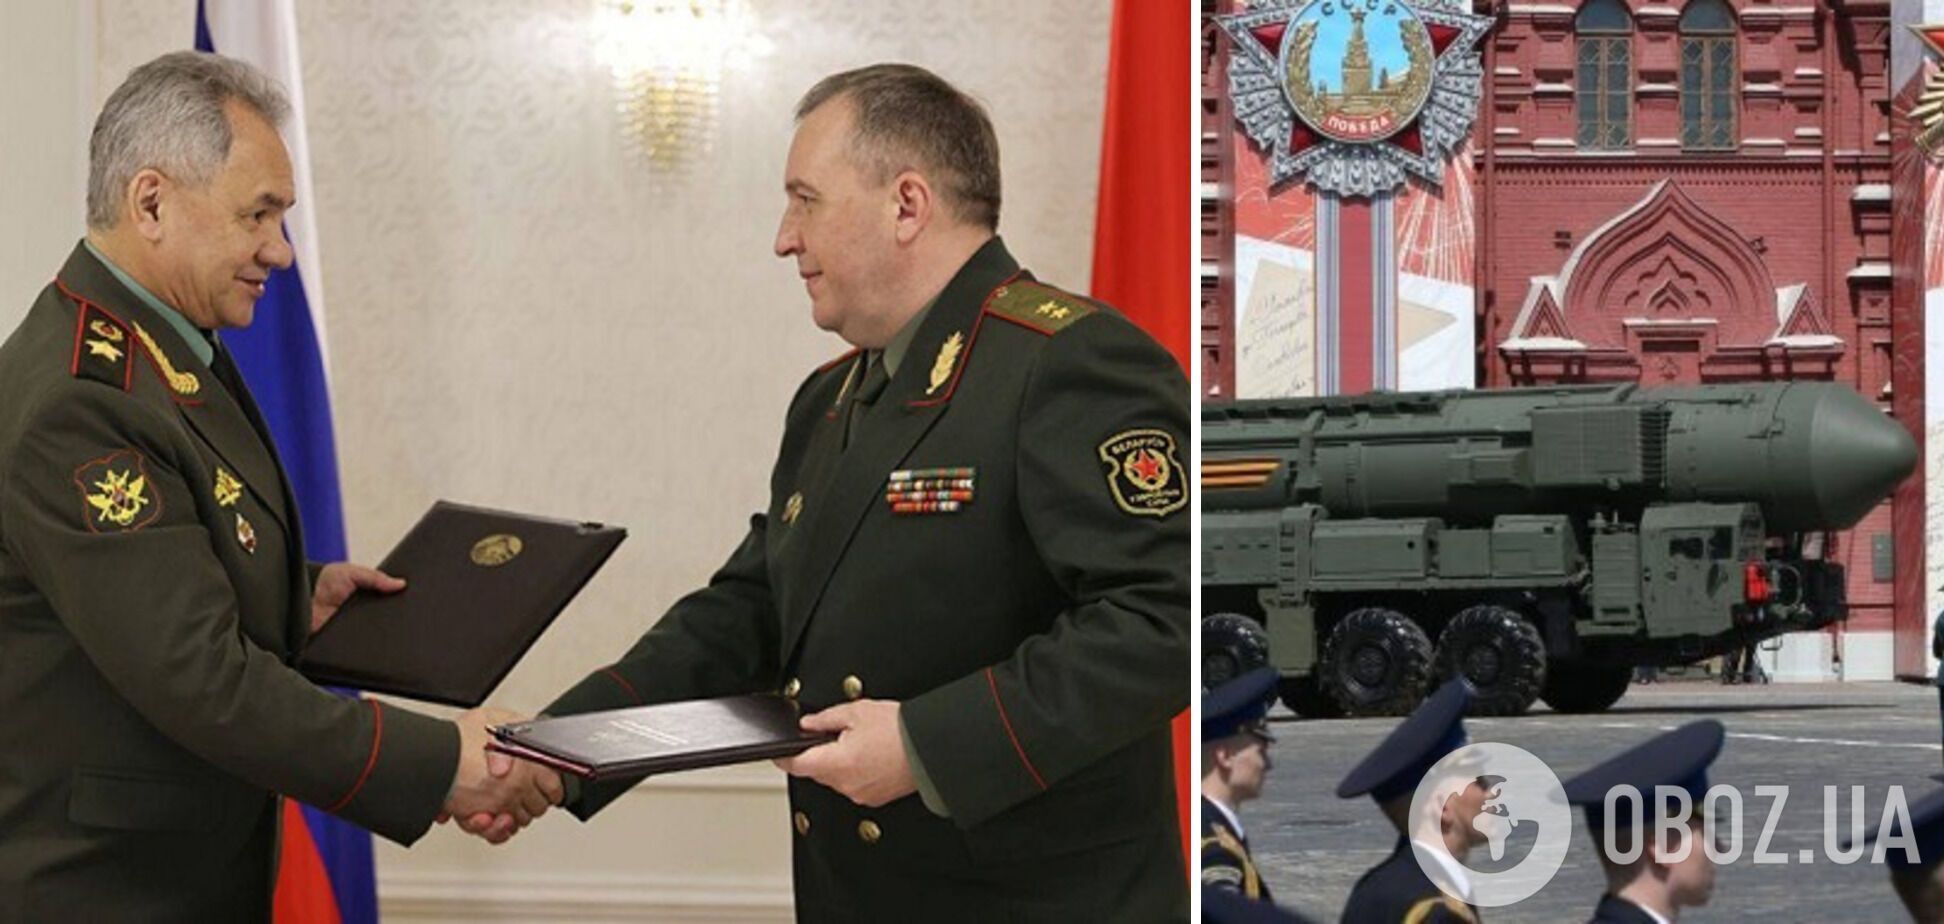 Москва и Минск подписали документ о размещении ядерного оружия в Беларуси: что предполагает и какие угрозы